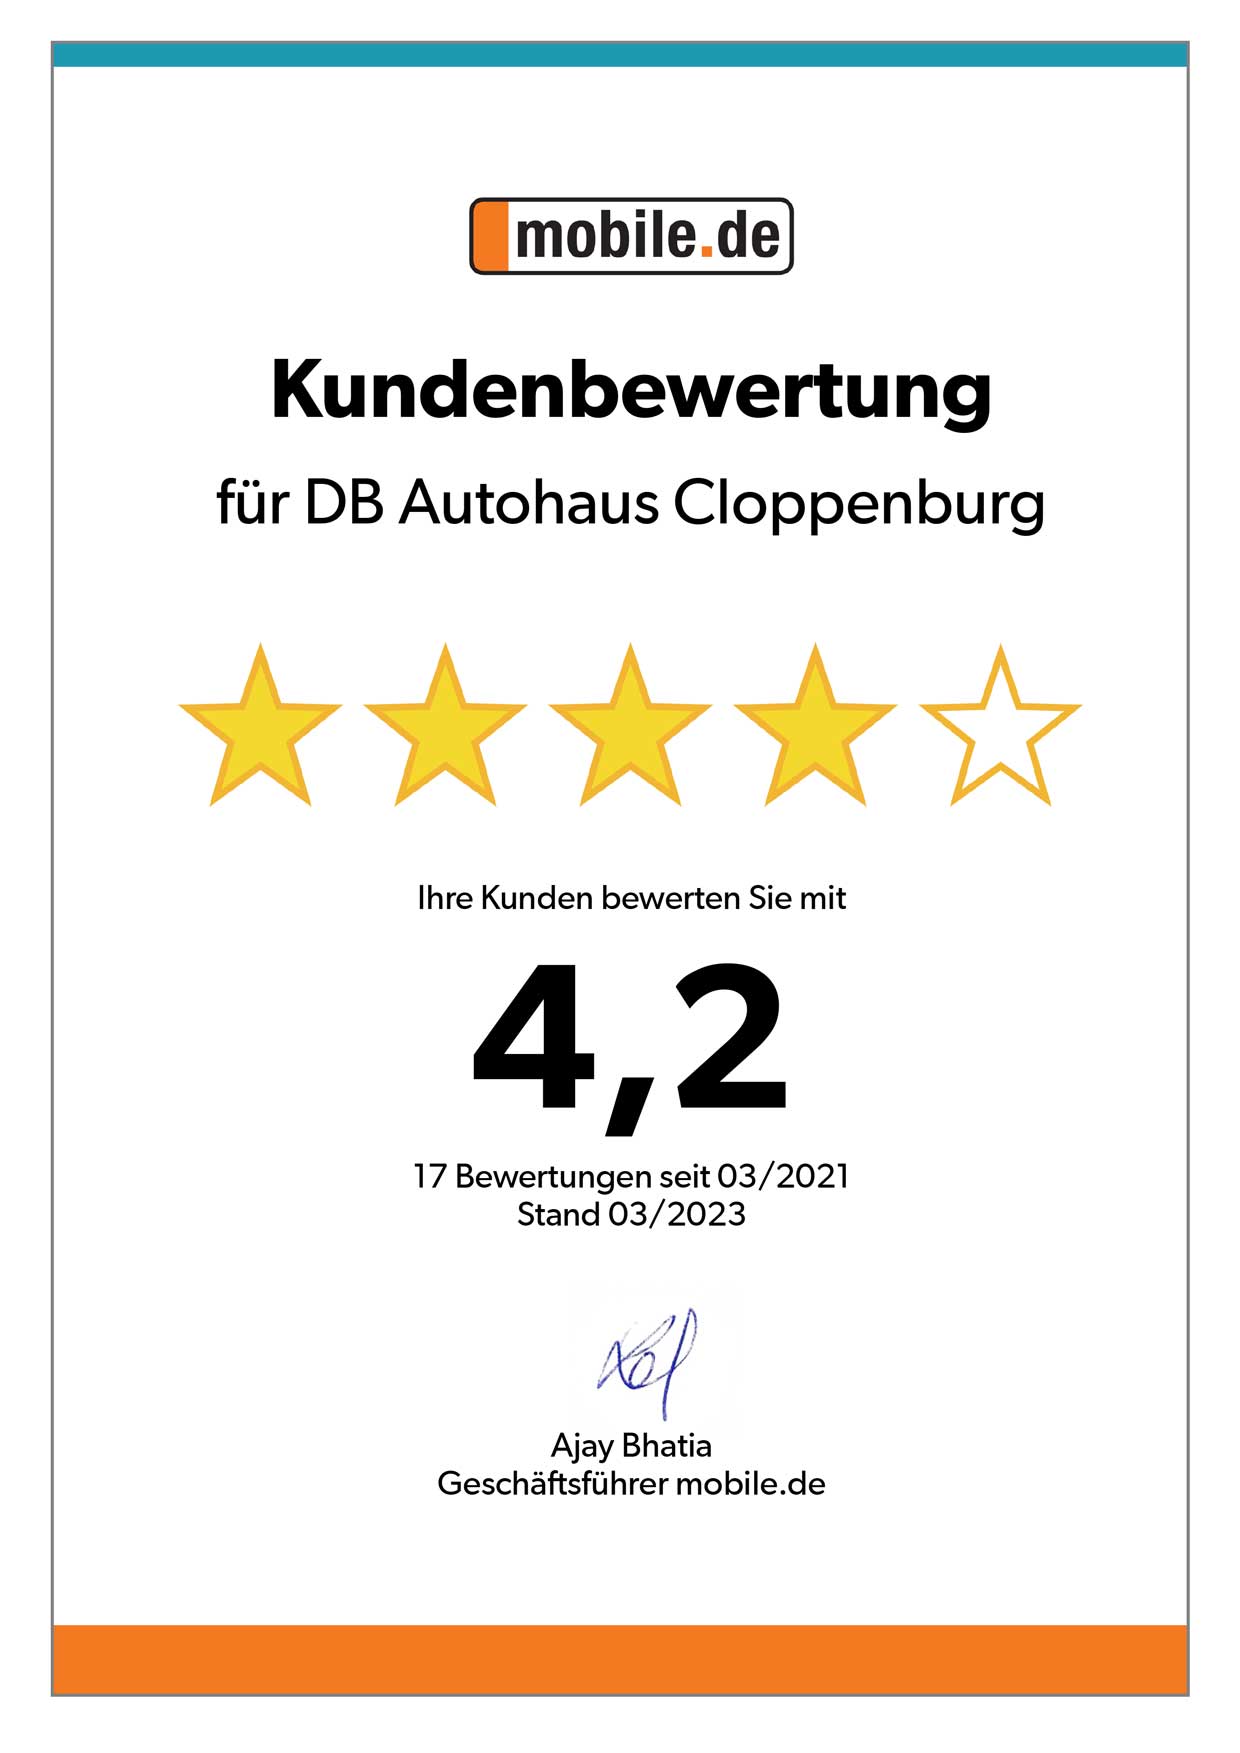 Auszeichnung von mobile.de für DB Autohaus Cloppenburg